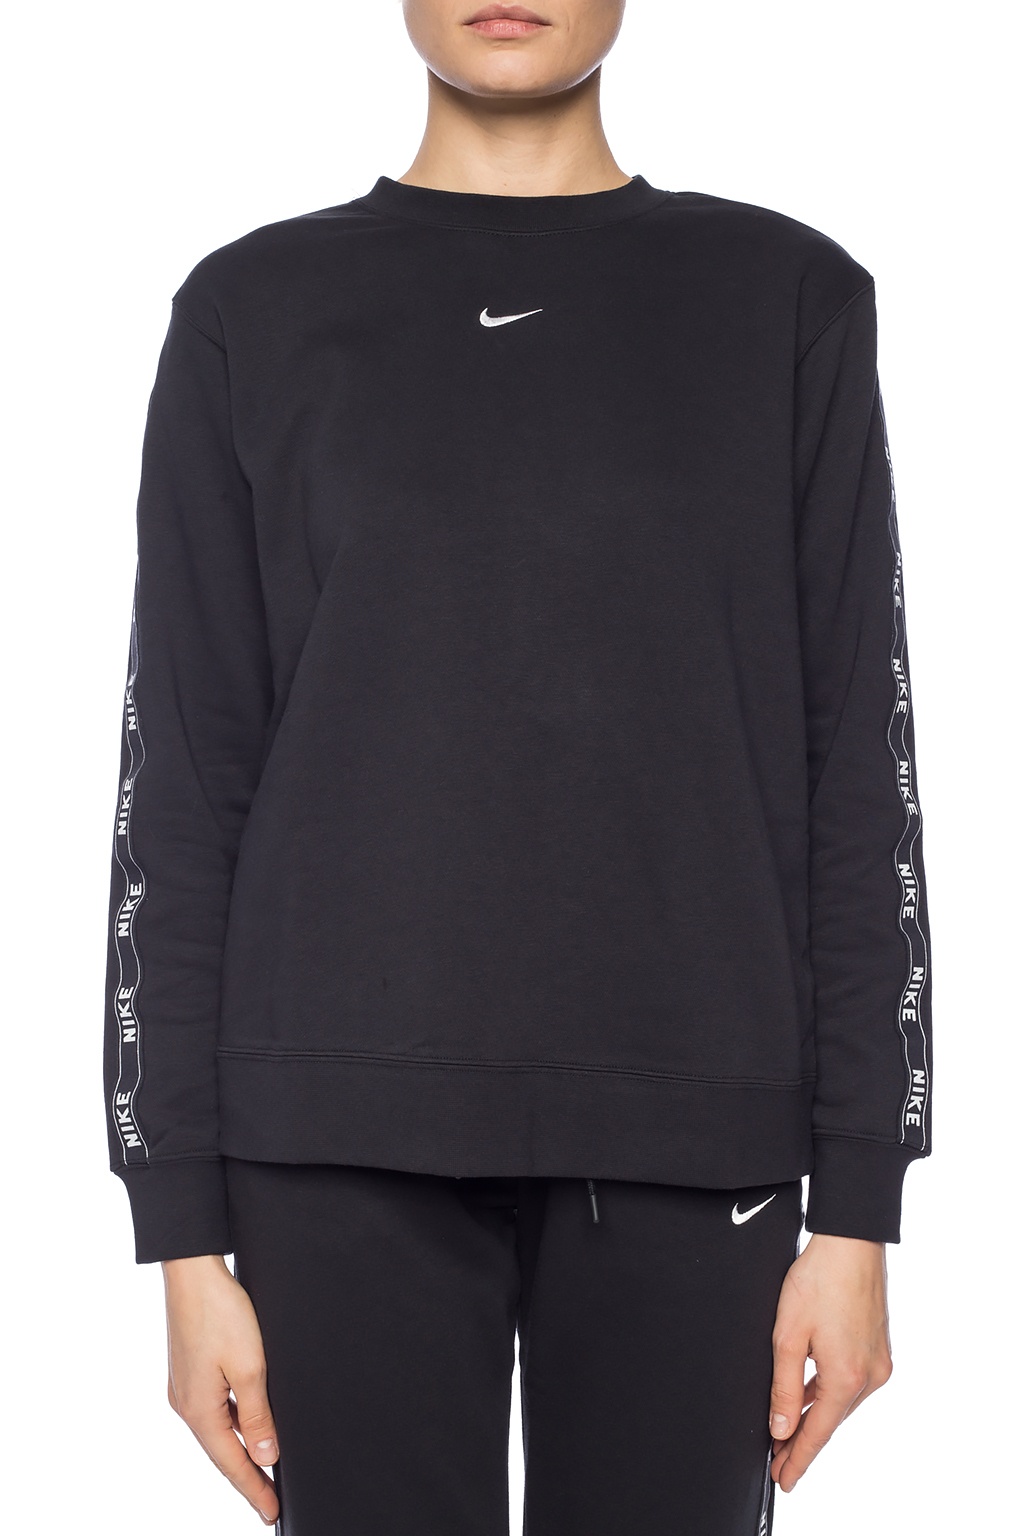 Papá Bocadillo Aprendizaje Black Branded sweatshirt Nike - Vitkac France